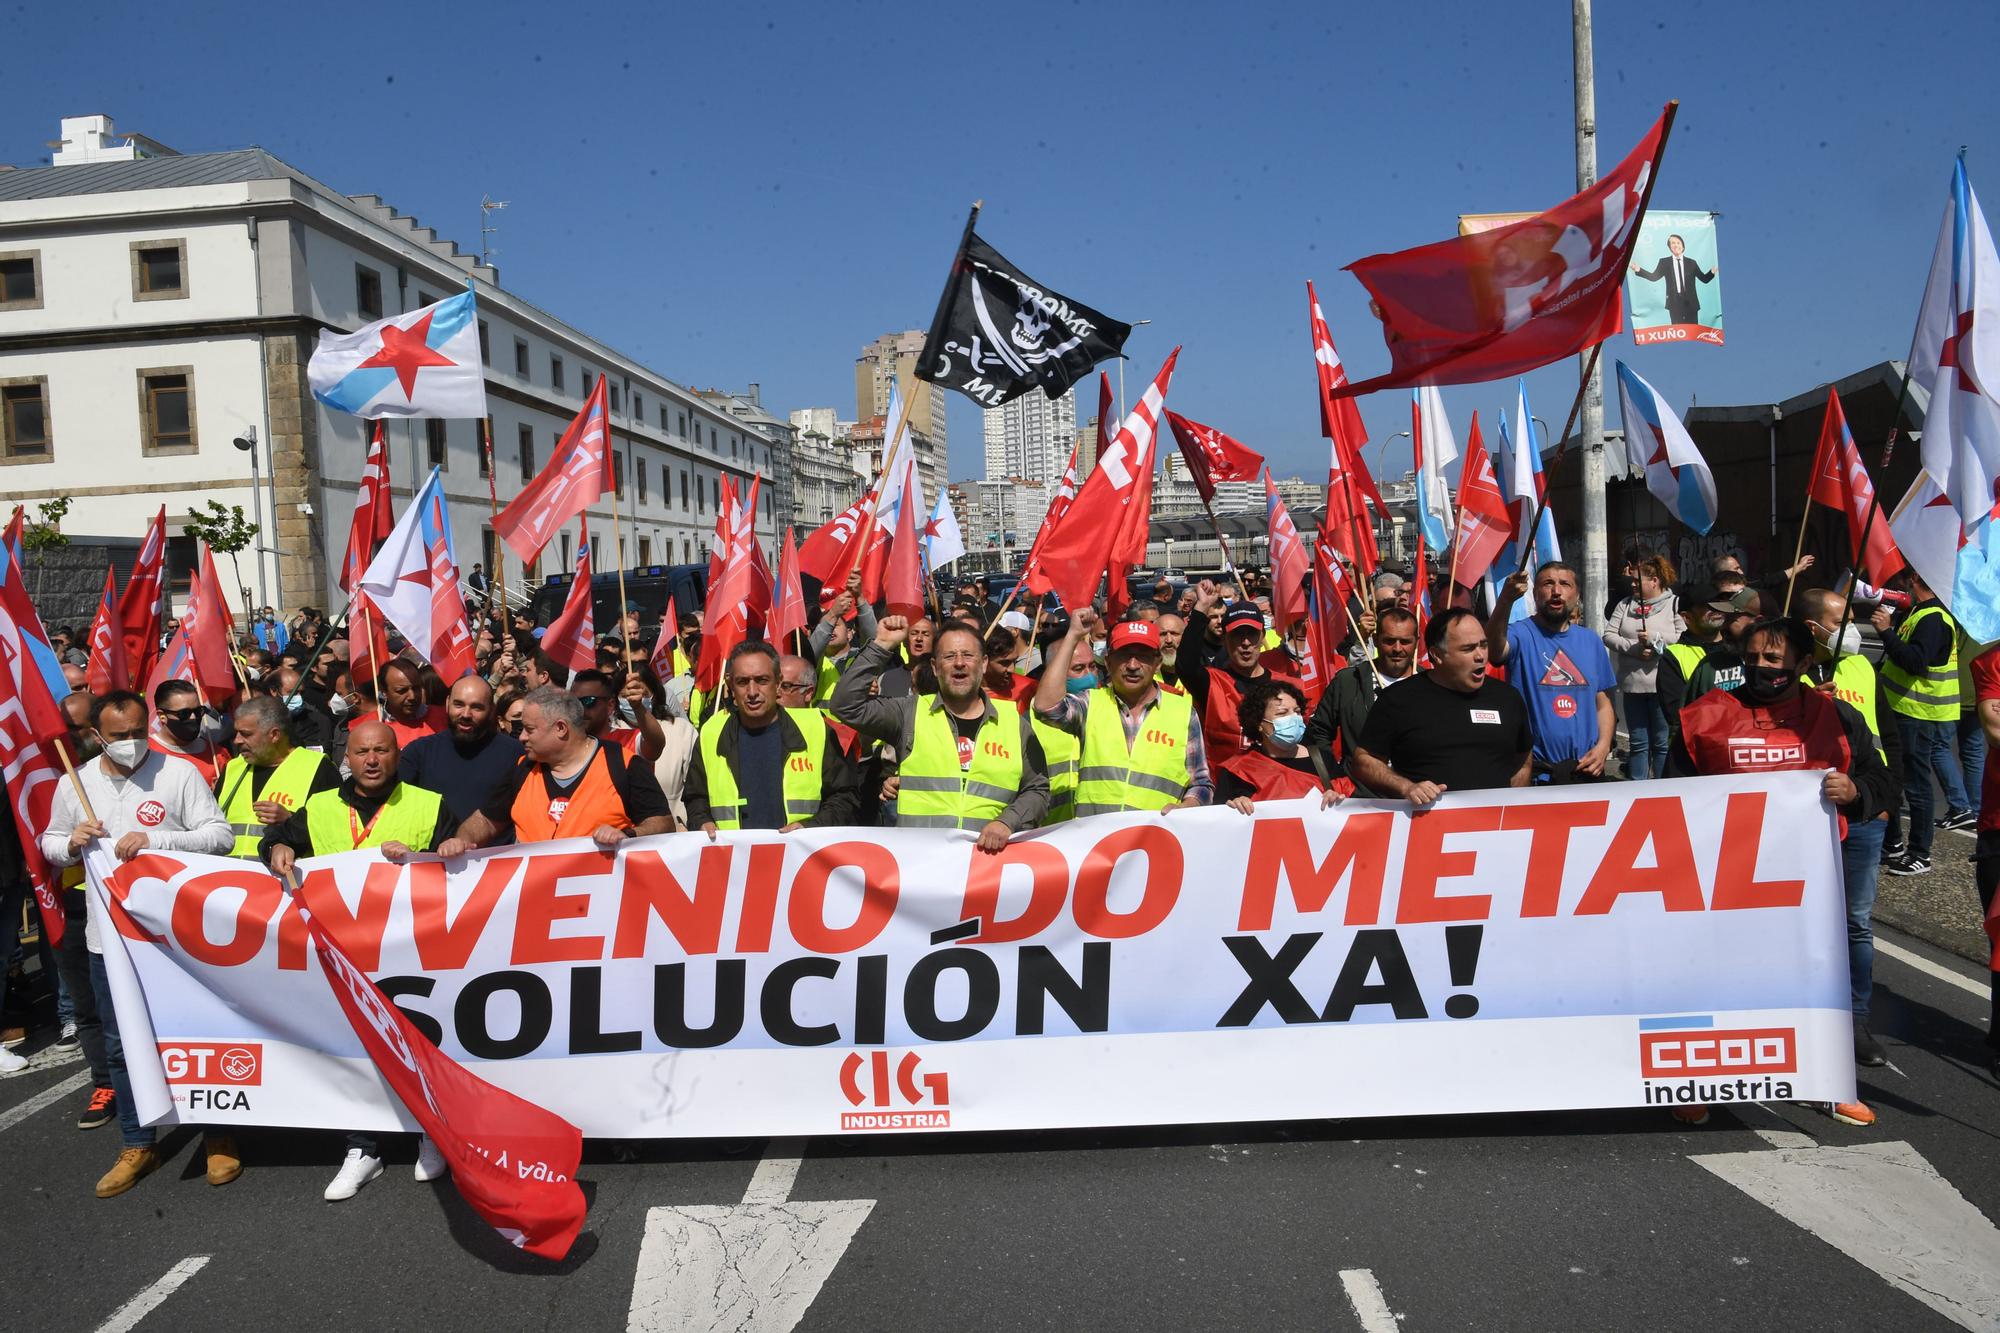 La primera jornada de huelga del metal alcanza un seguimiento del 85% en la comarca coruñesa